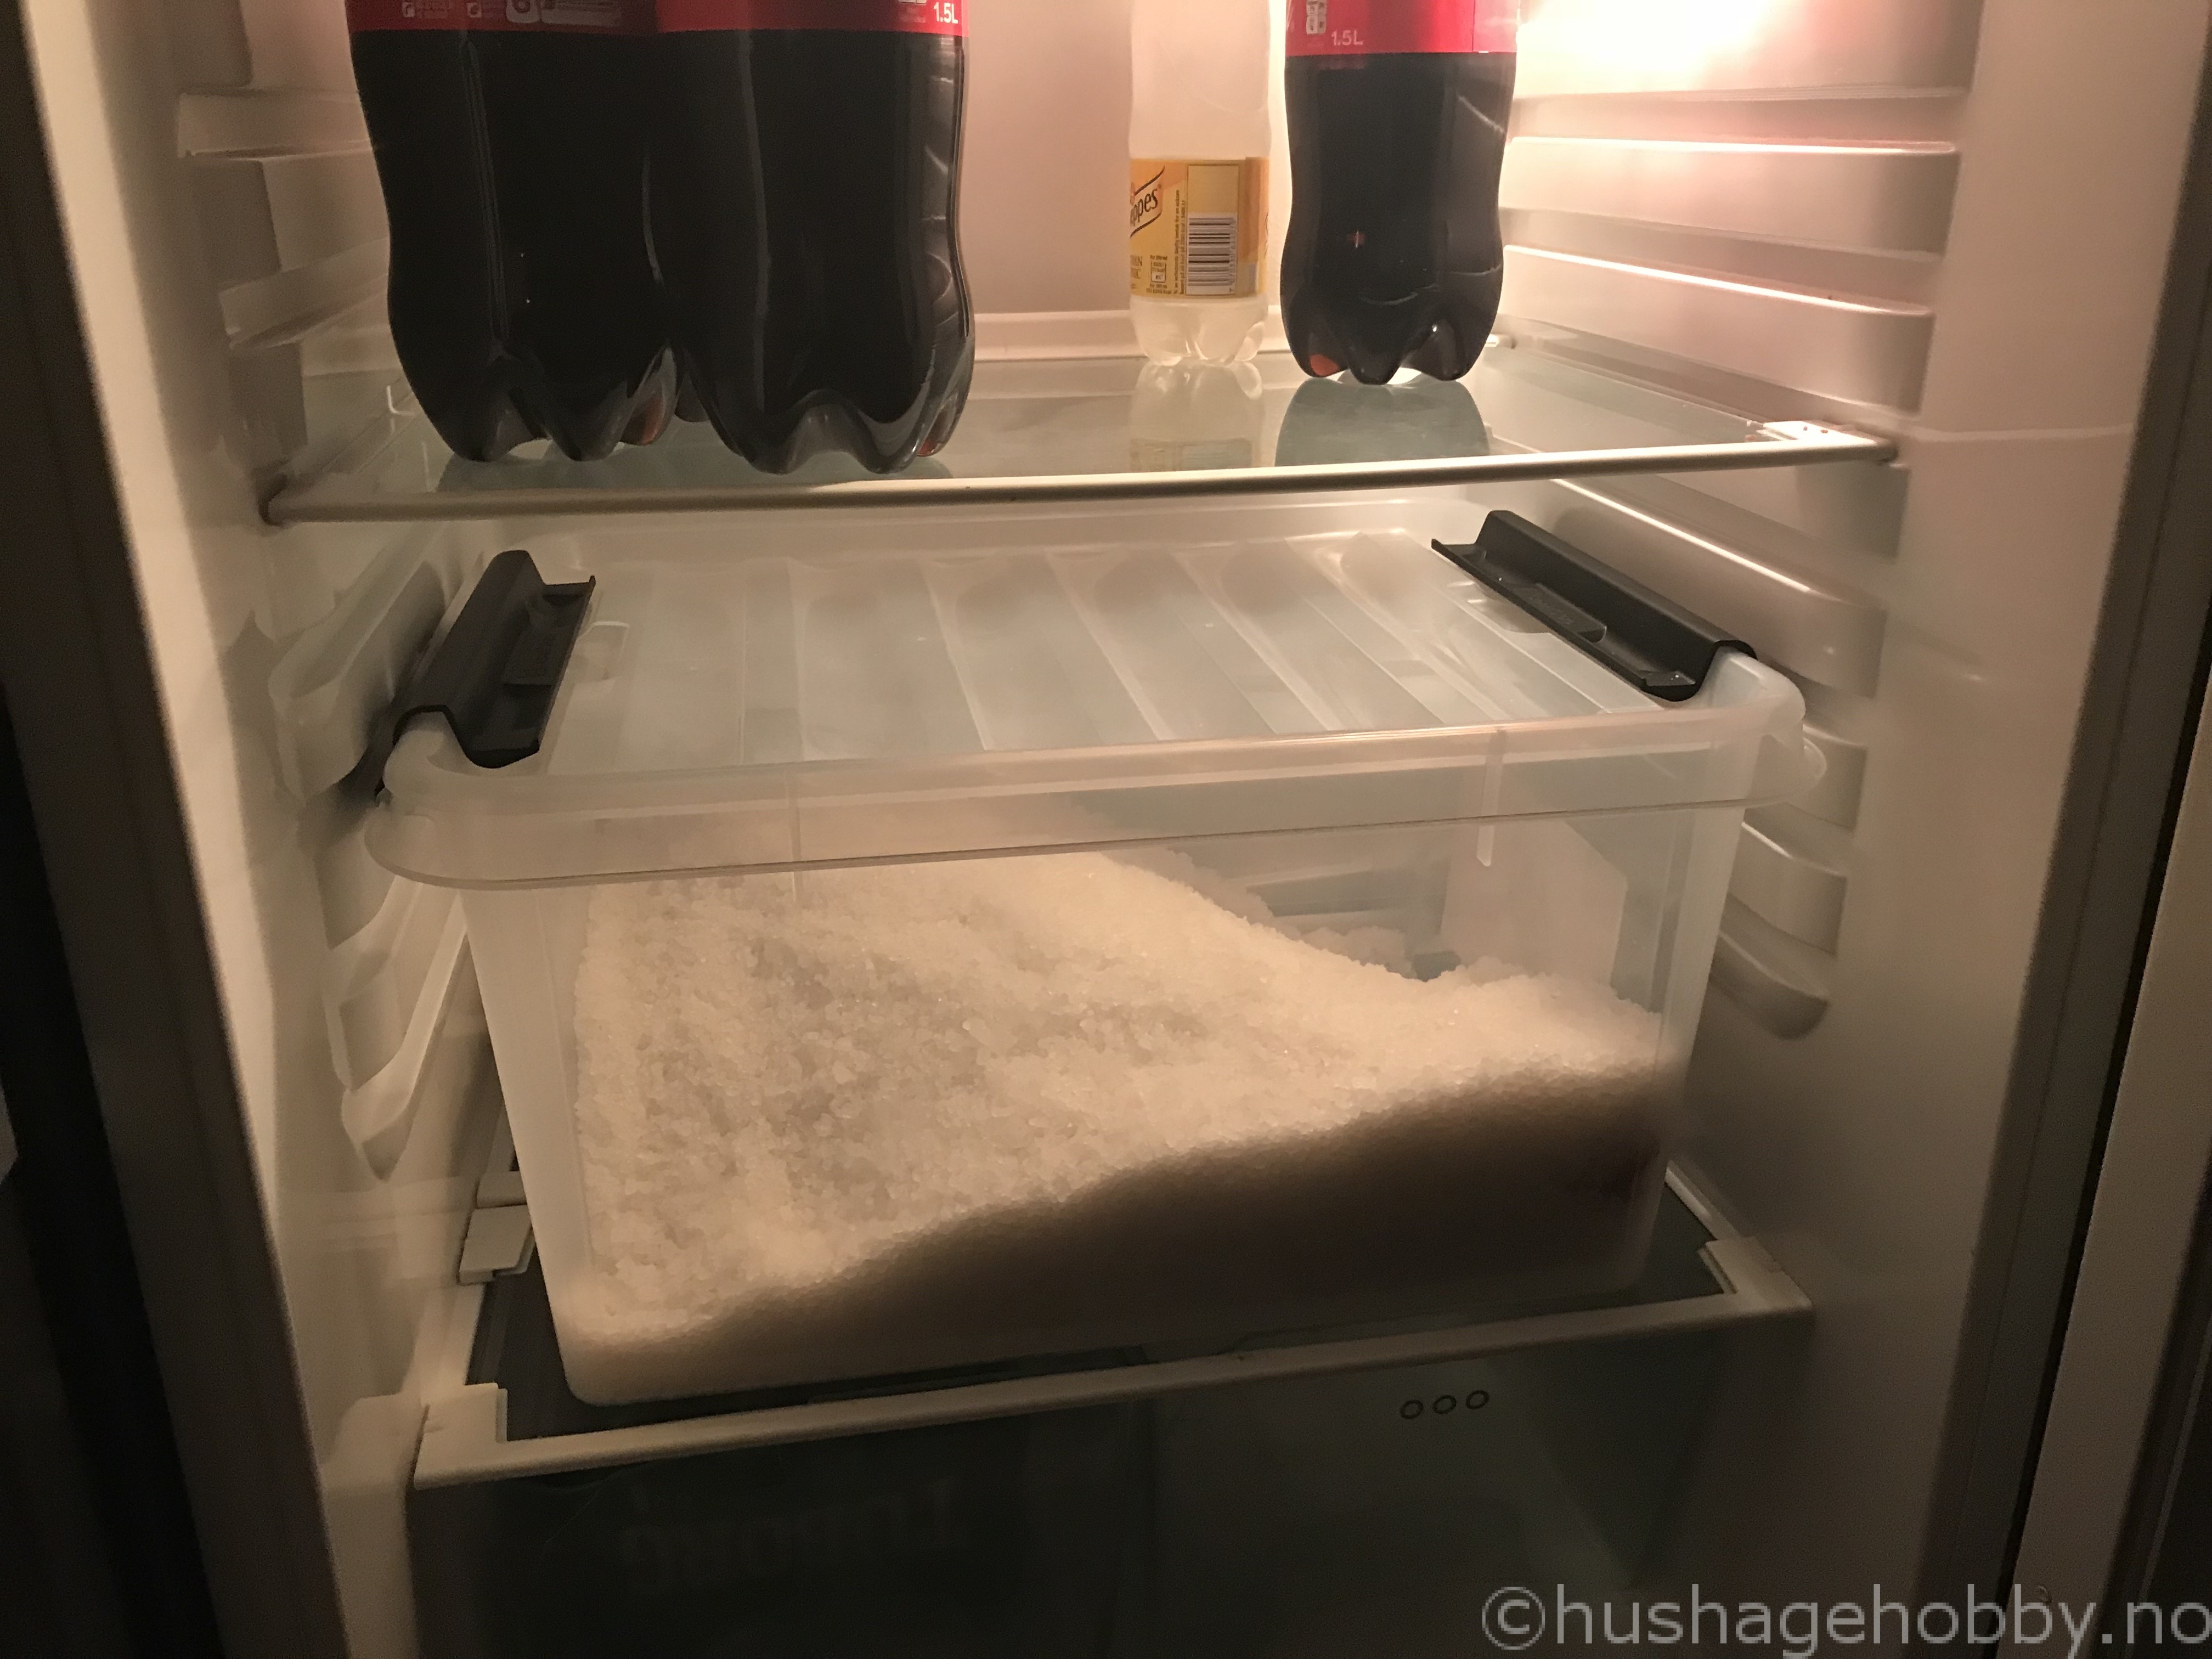 Fenalår tørrsaltet dekt av salt i kjøleskapet